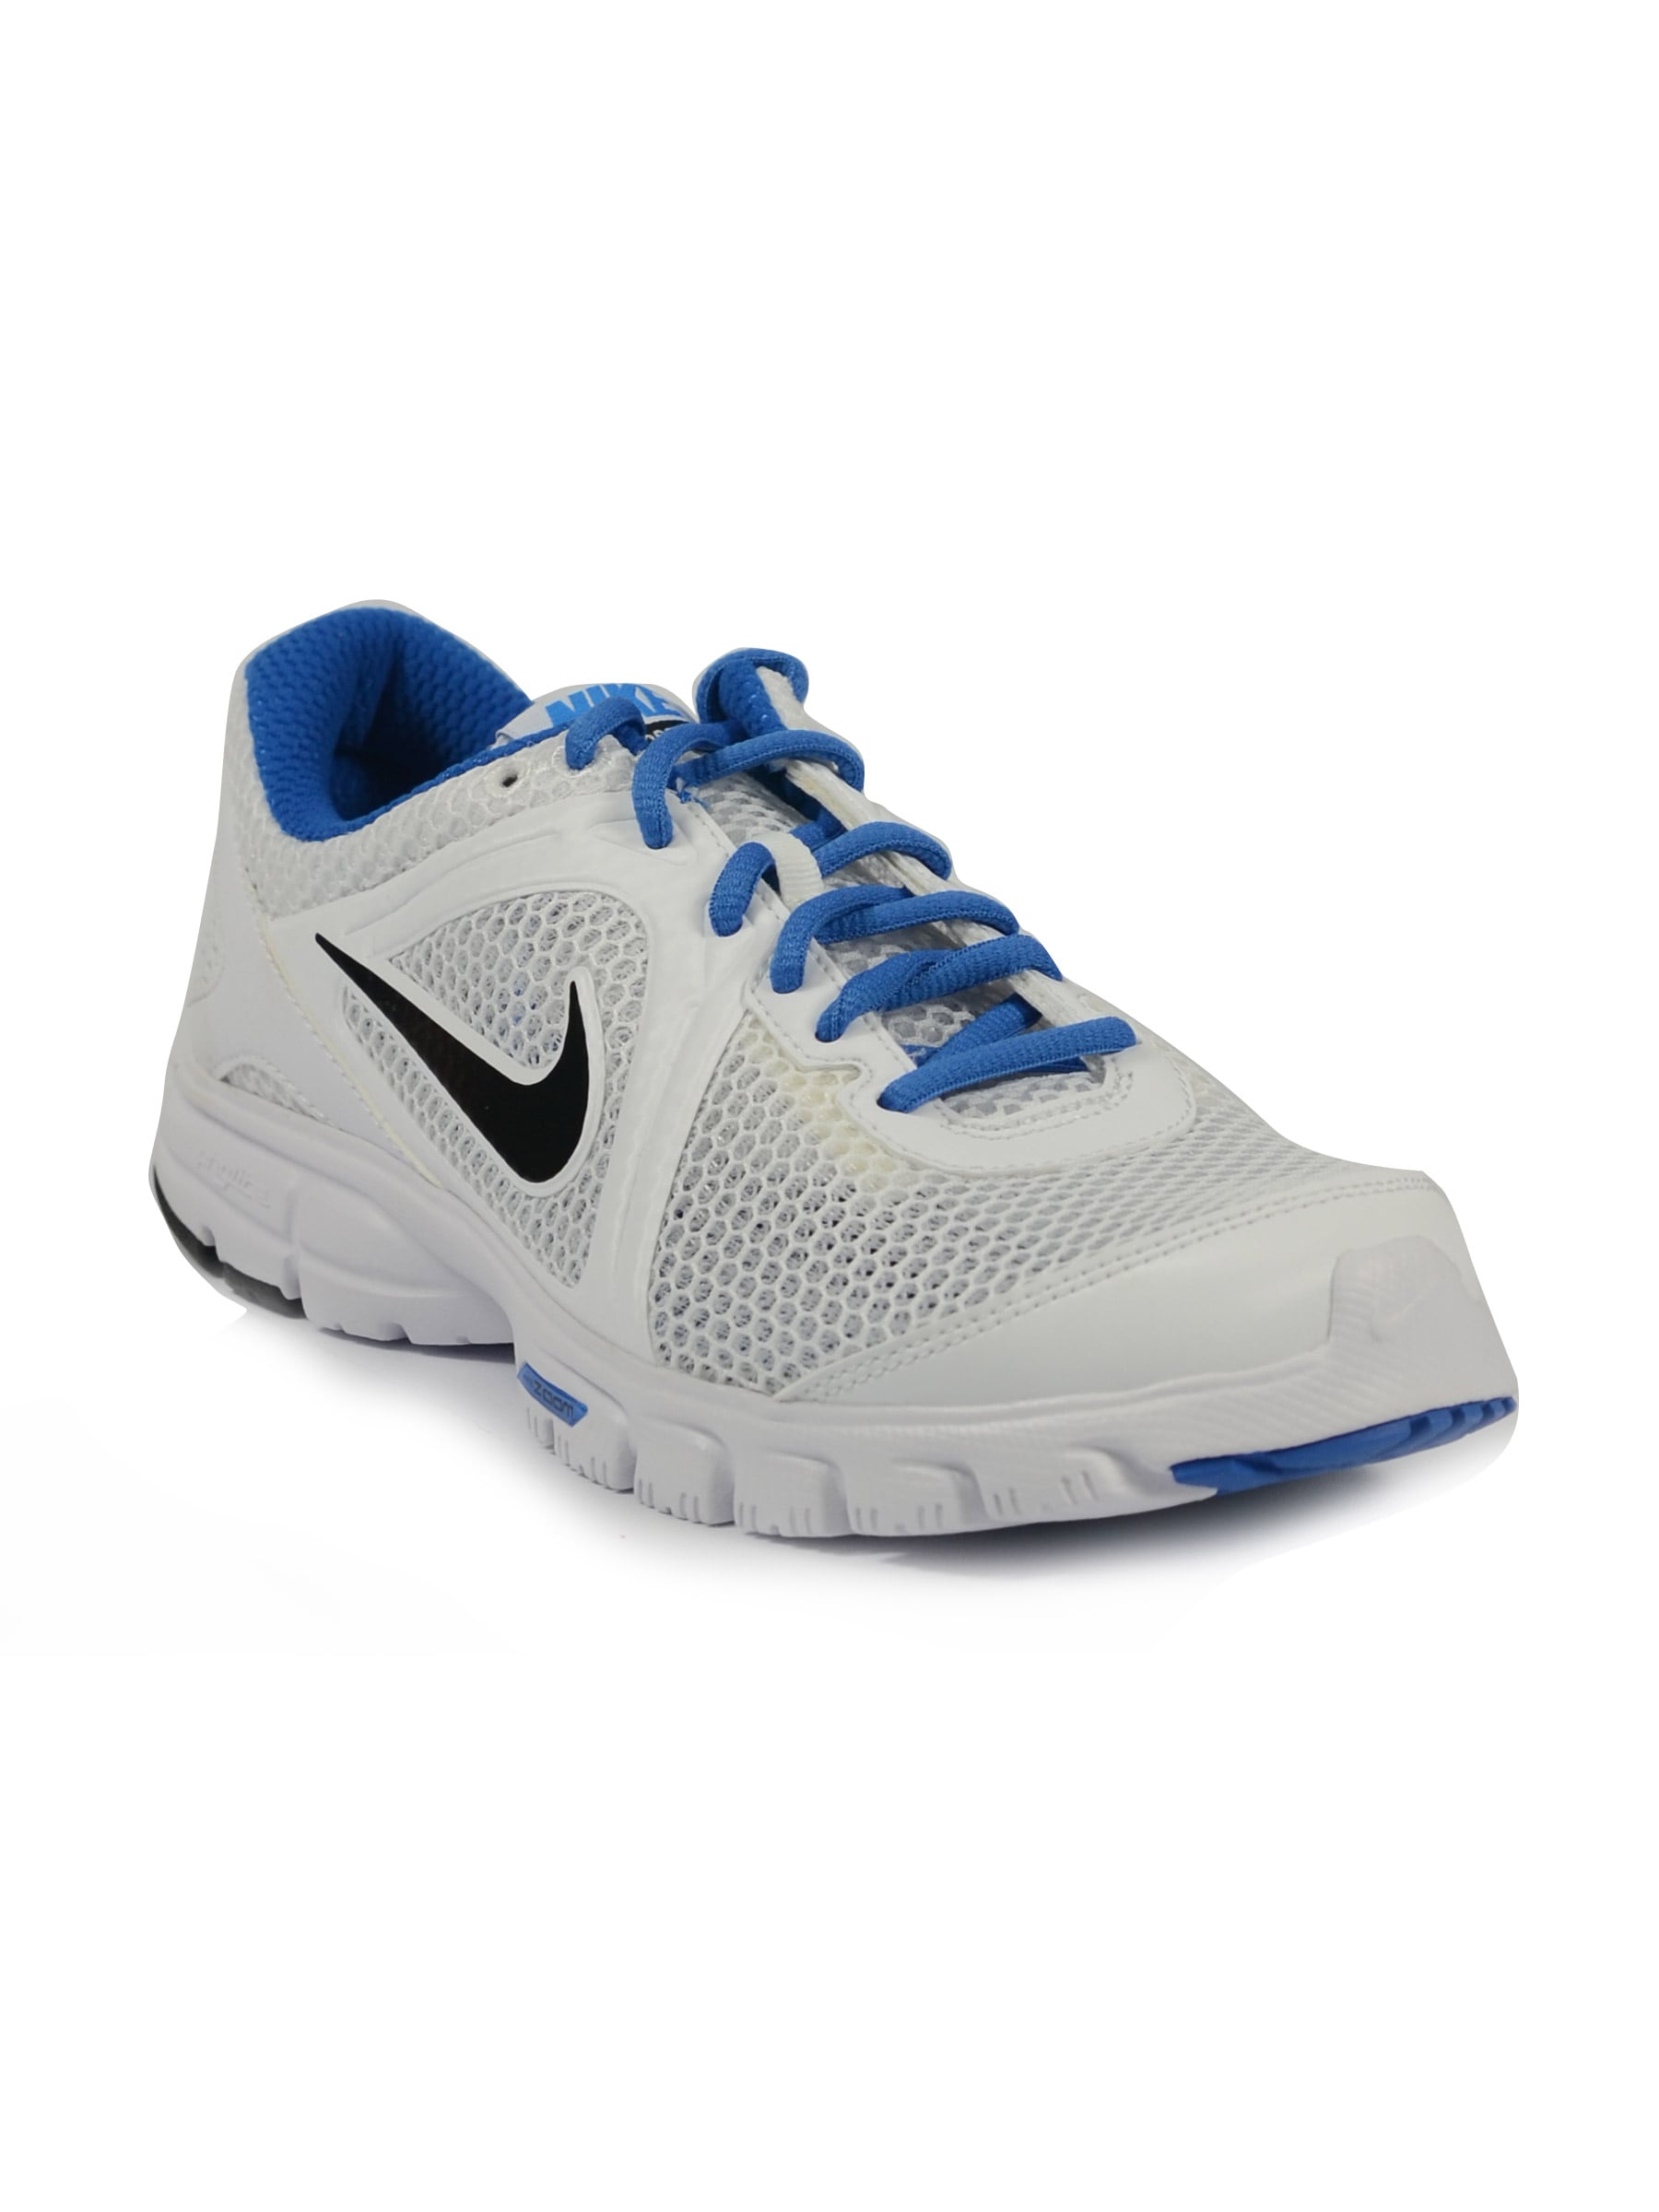 Nike Men's Zoom For 3 White Blue Shoe